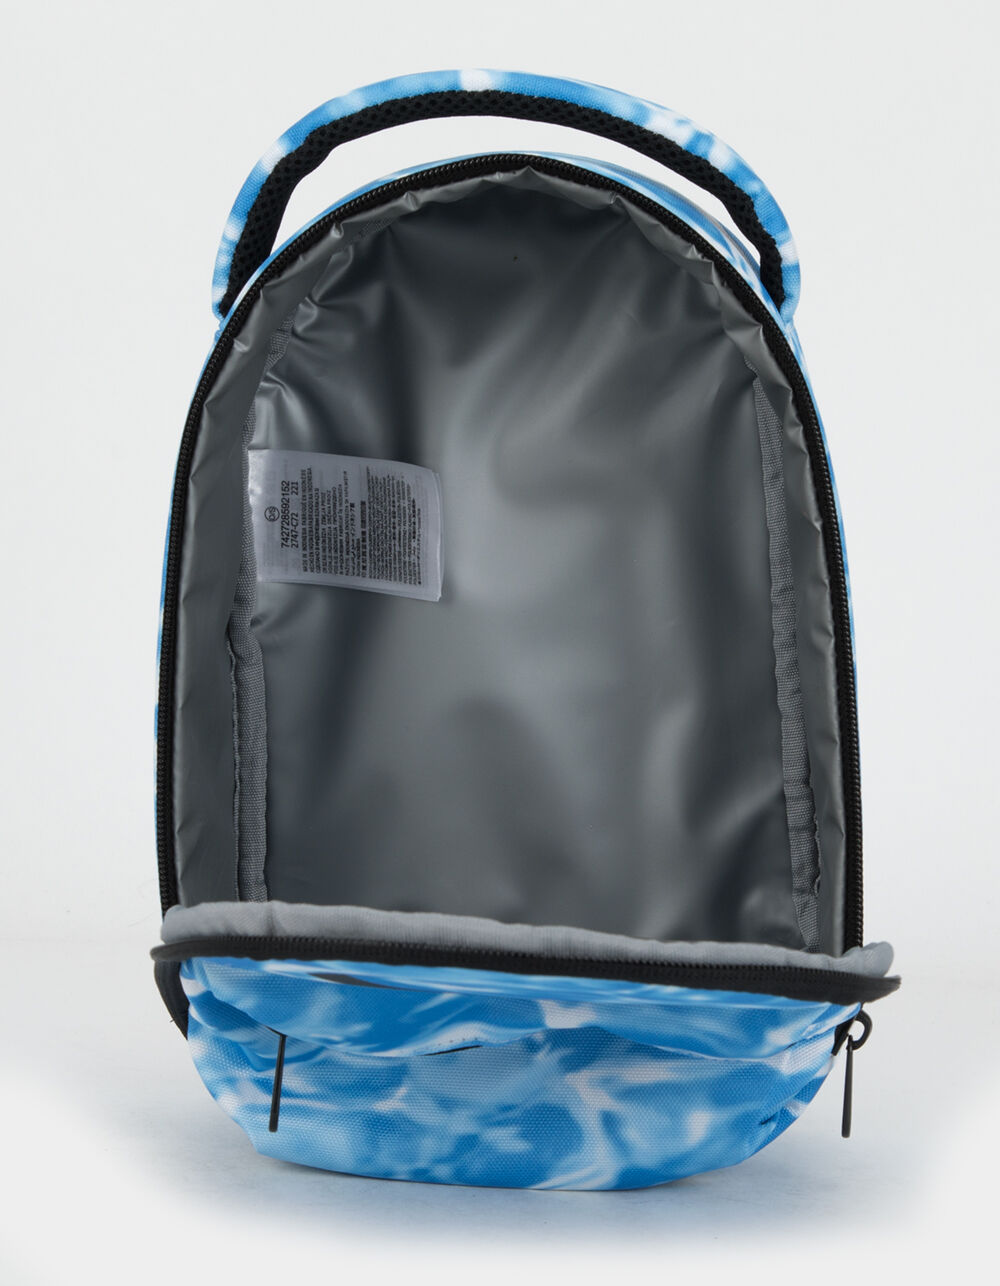 Nike Brasilia Fuel Pack Lunch Bag in Blue for Men